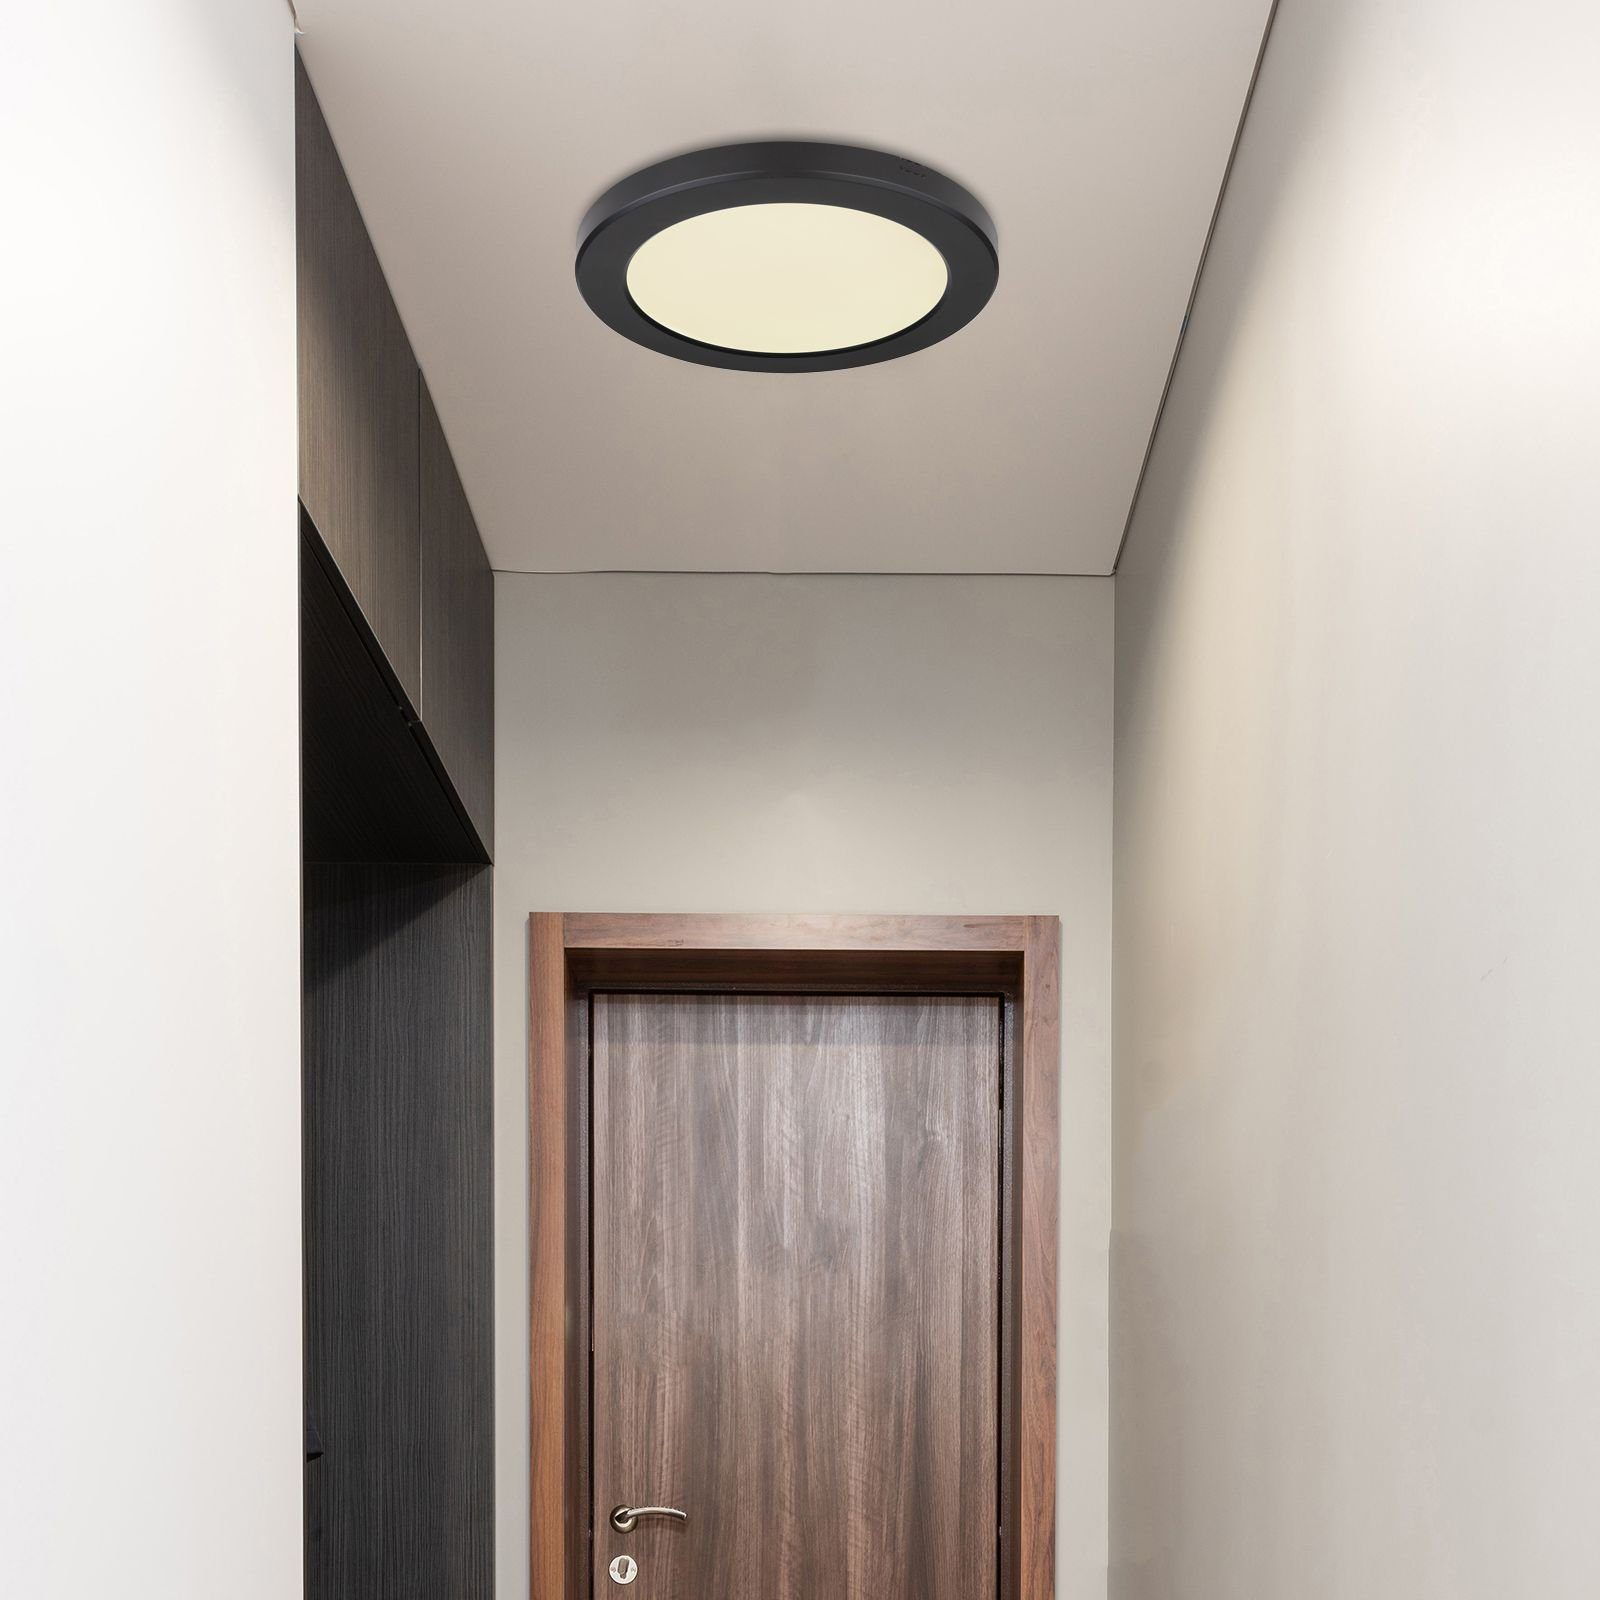 Deckenleuchte Schlafzimmer Globo LED rund GLOBO Deckenleuchte Wohnzimmer Deckenlampe